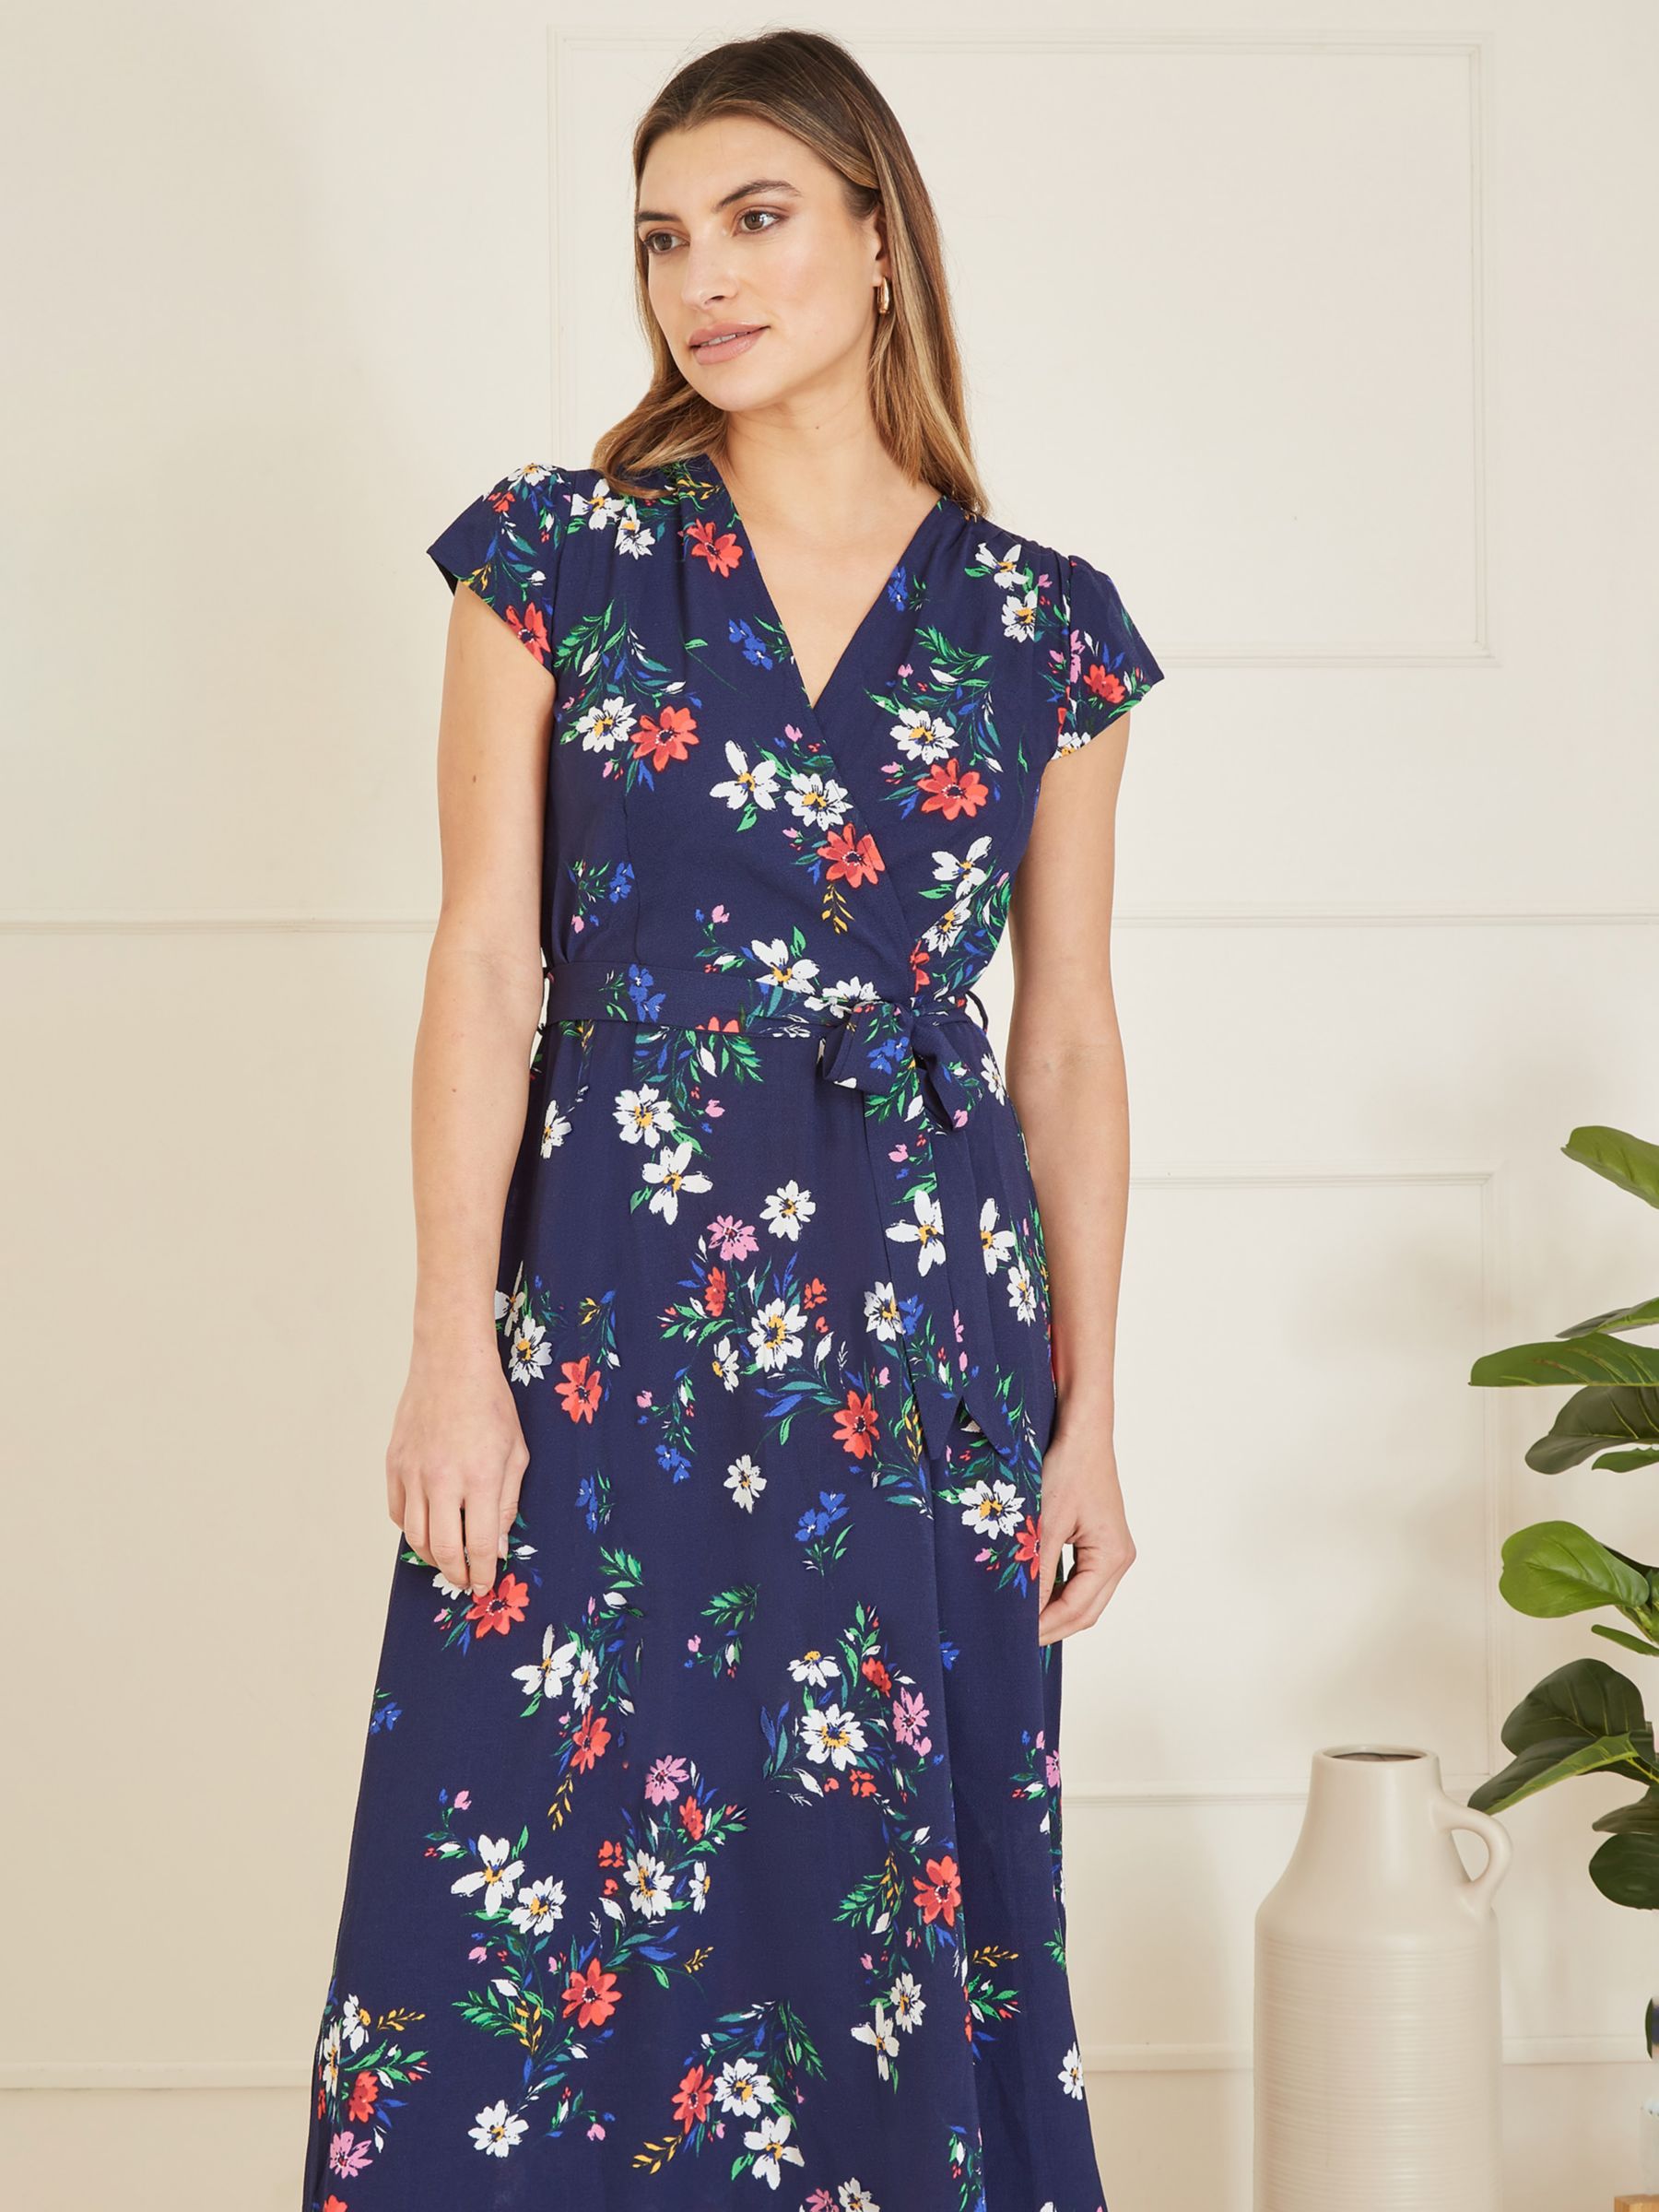 Mela London Floral Print Dip Hem Midi Dress, Navy/Multi, 8